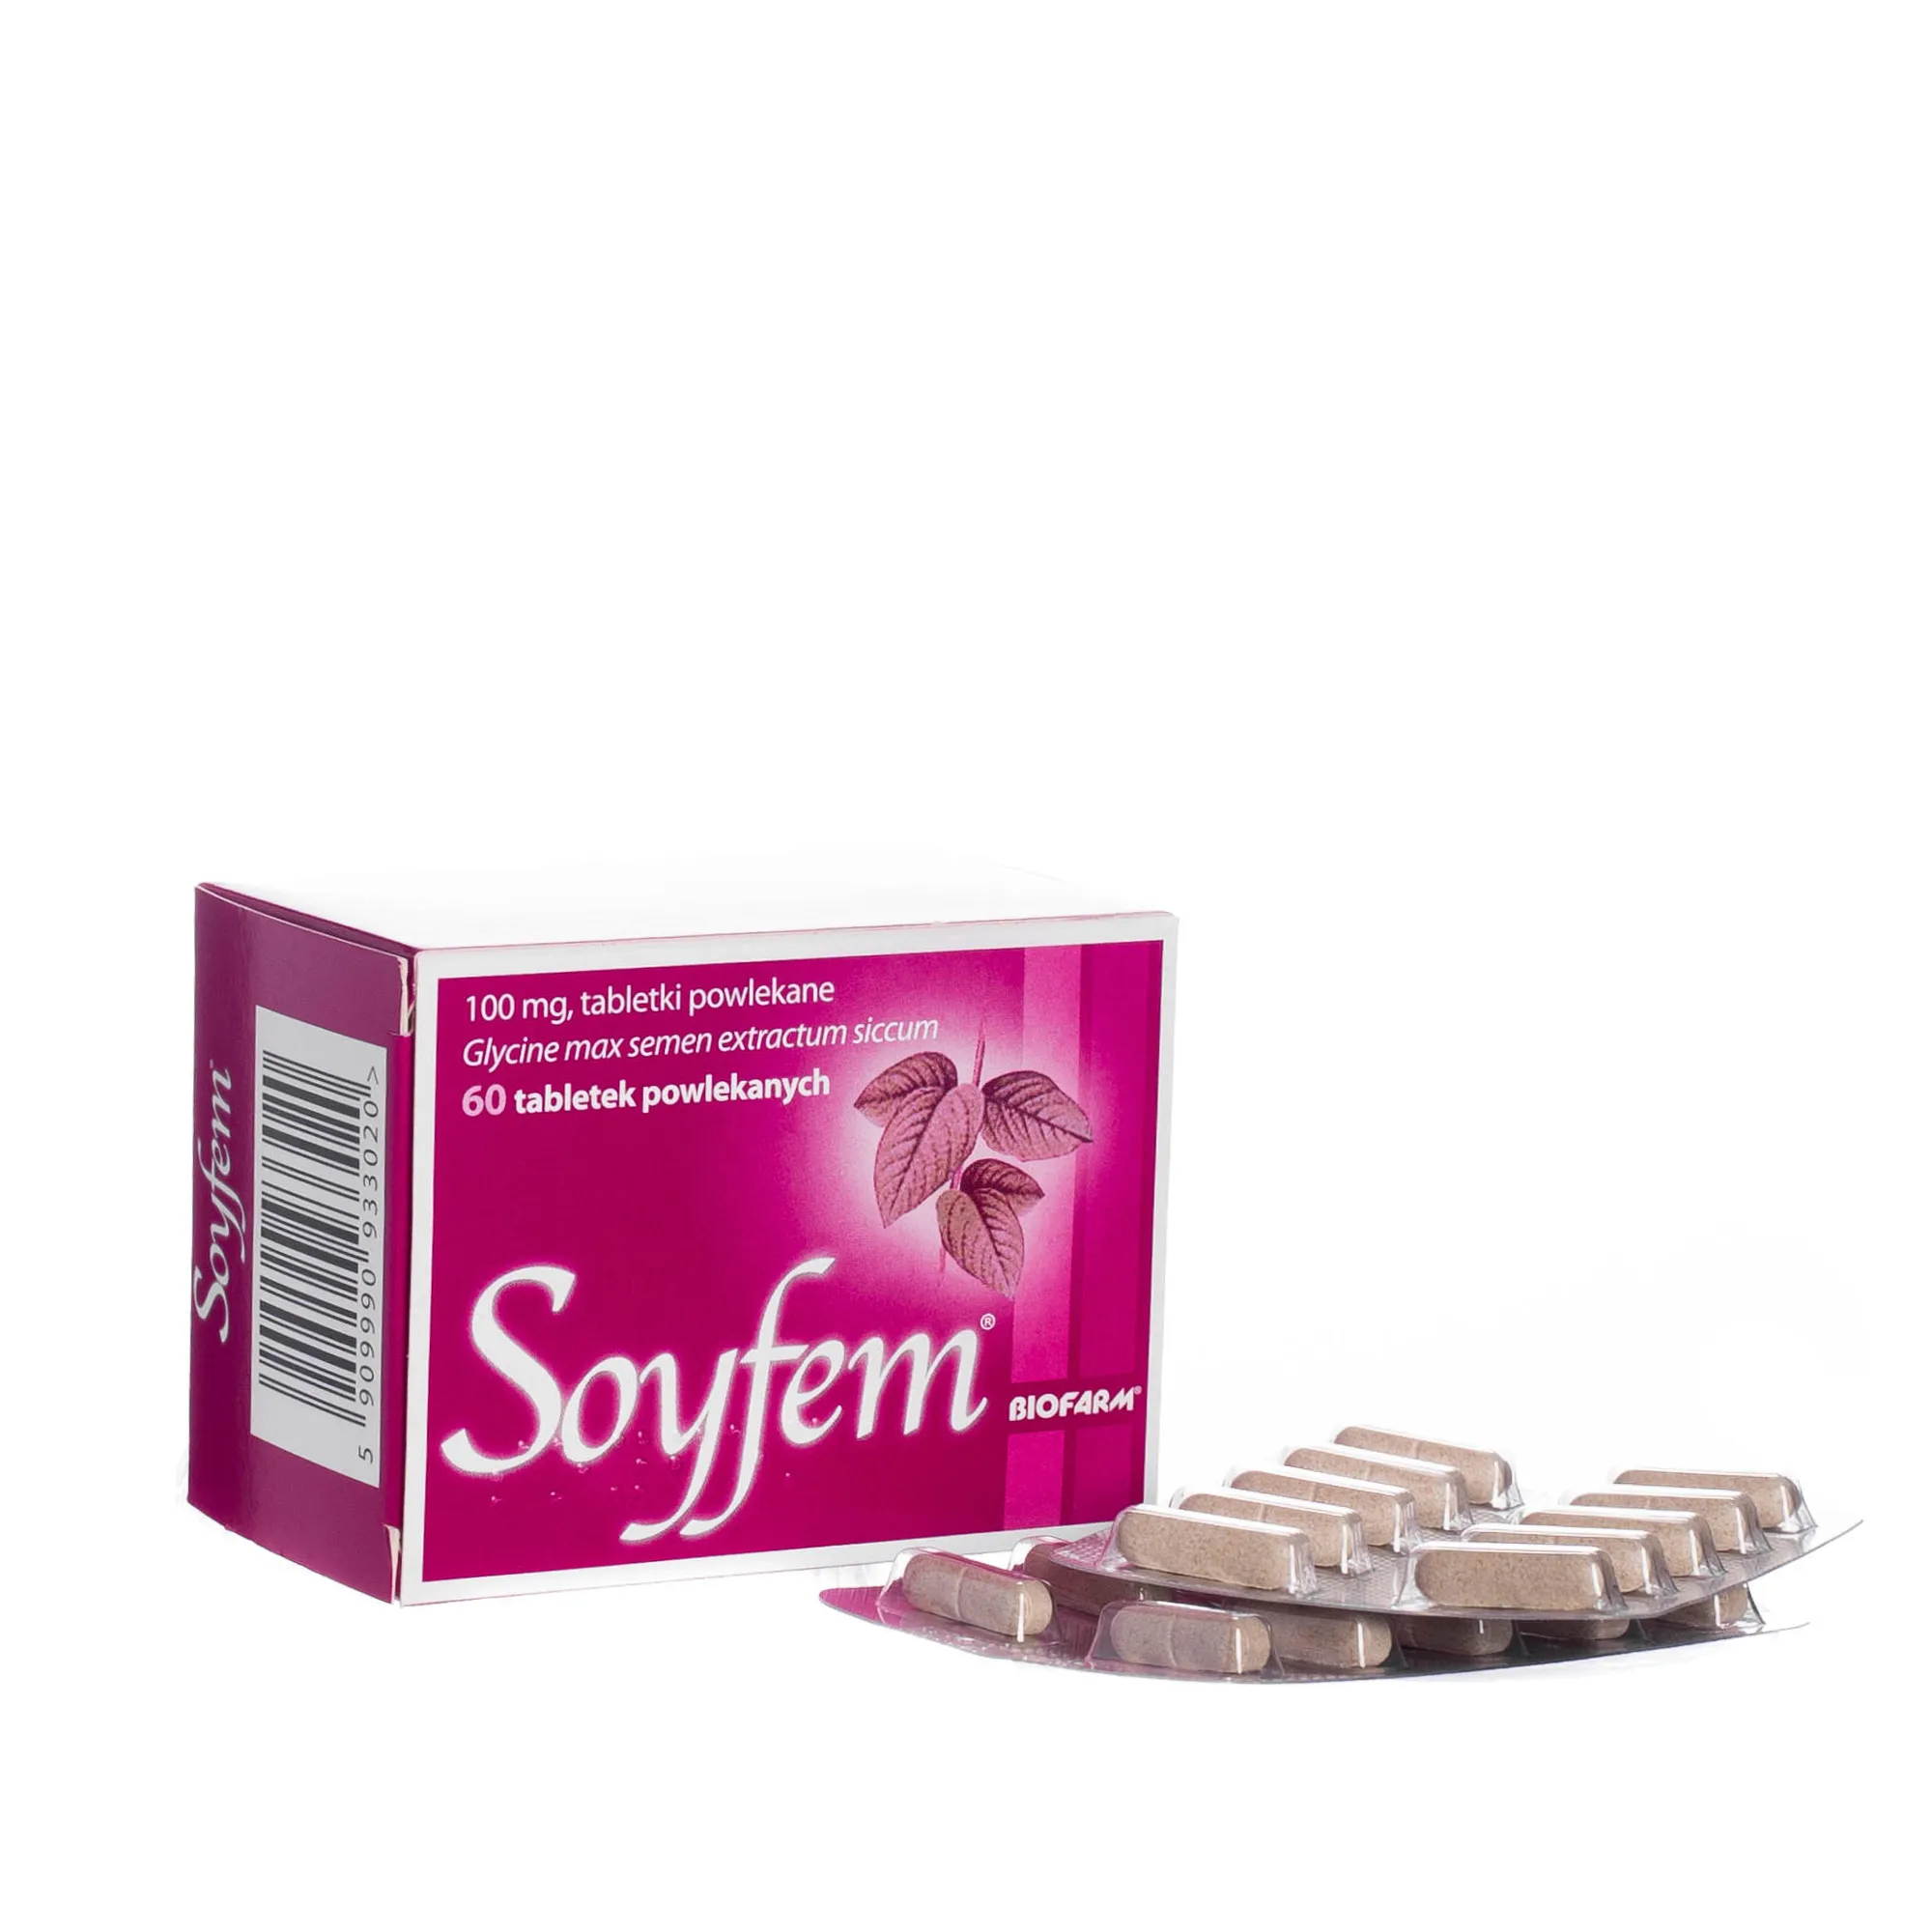 Soyfem - 60 tabletek powlekanych 